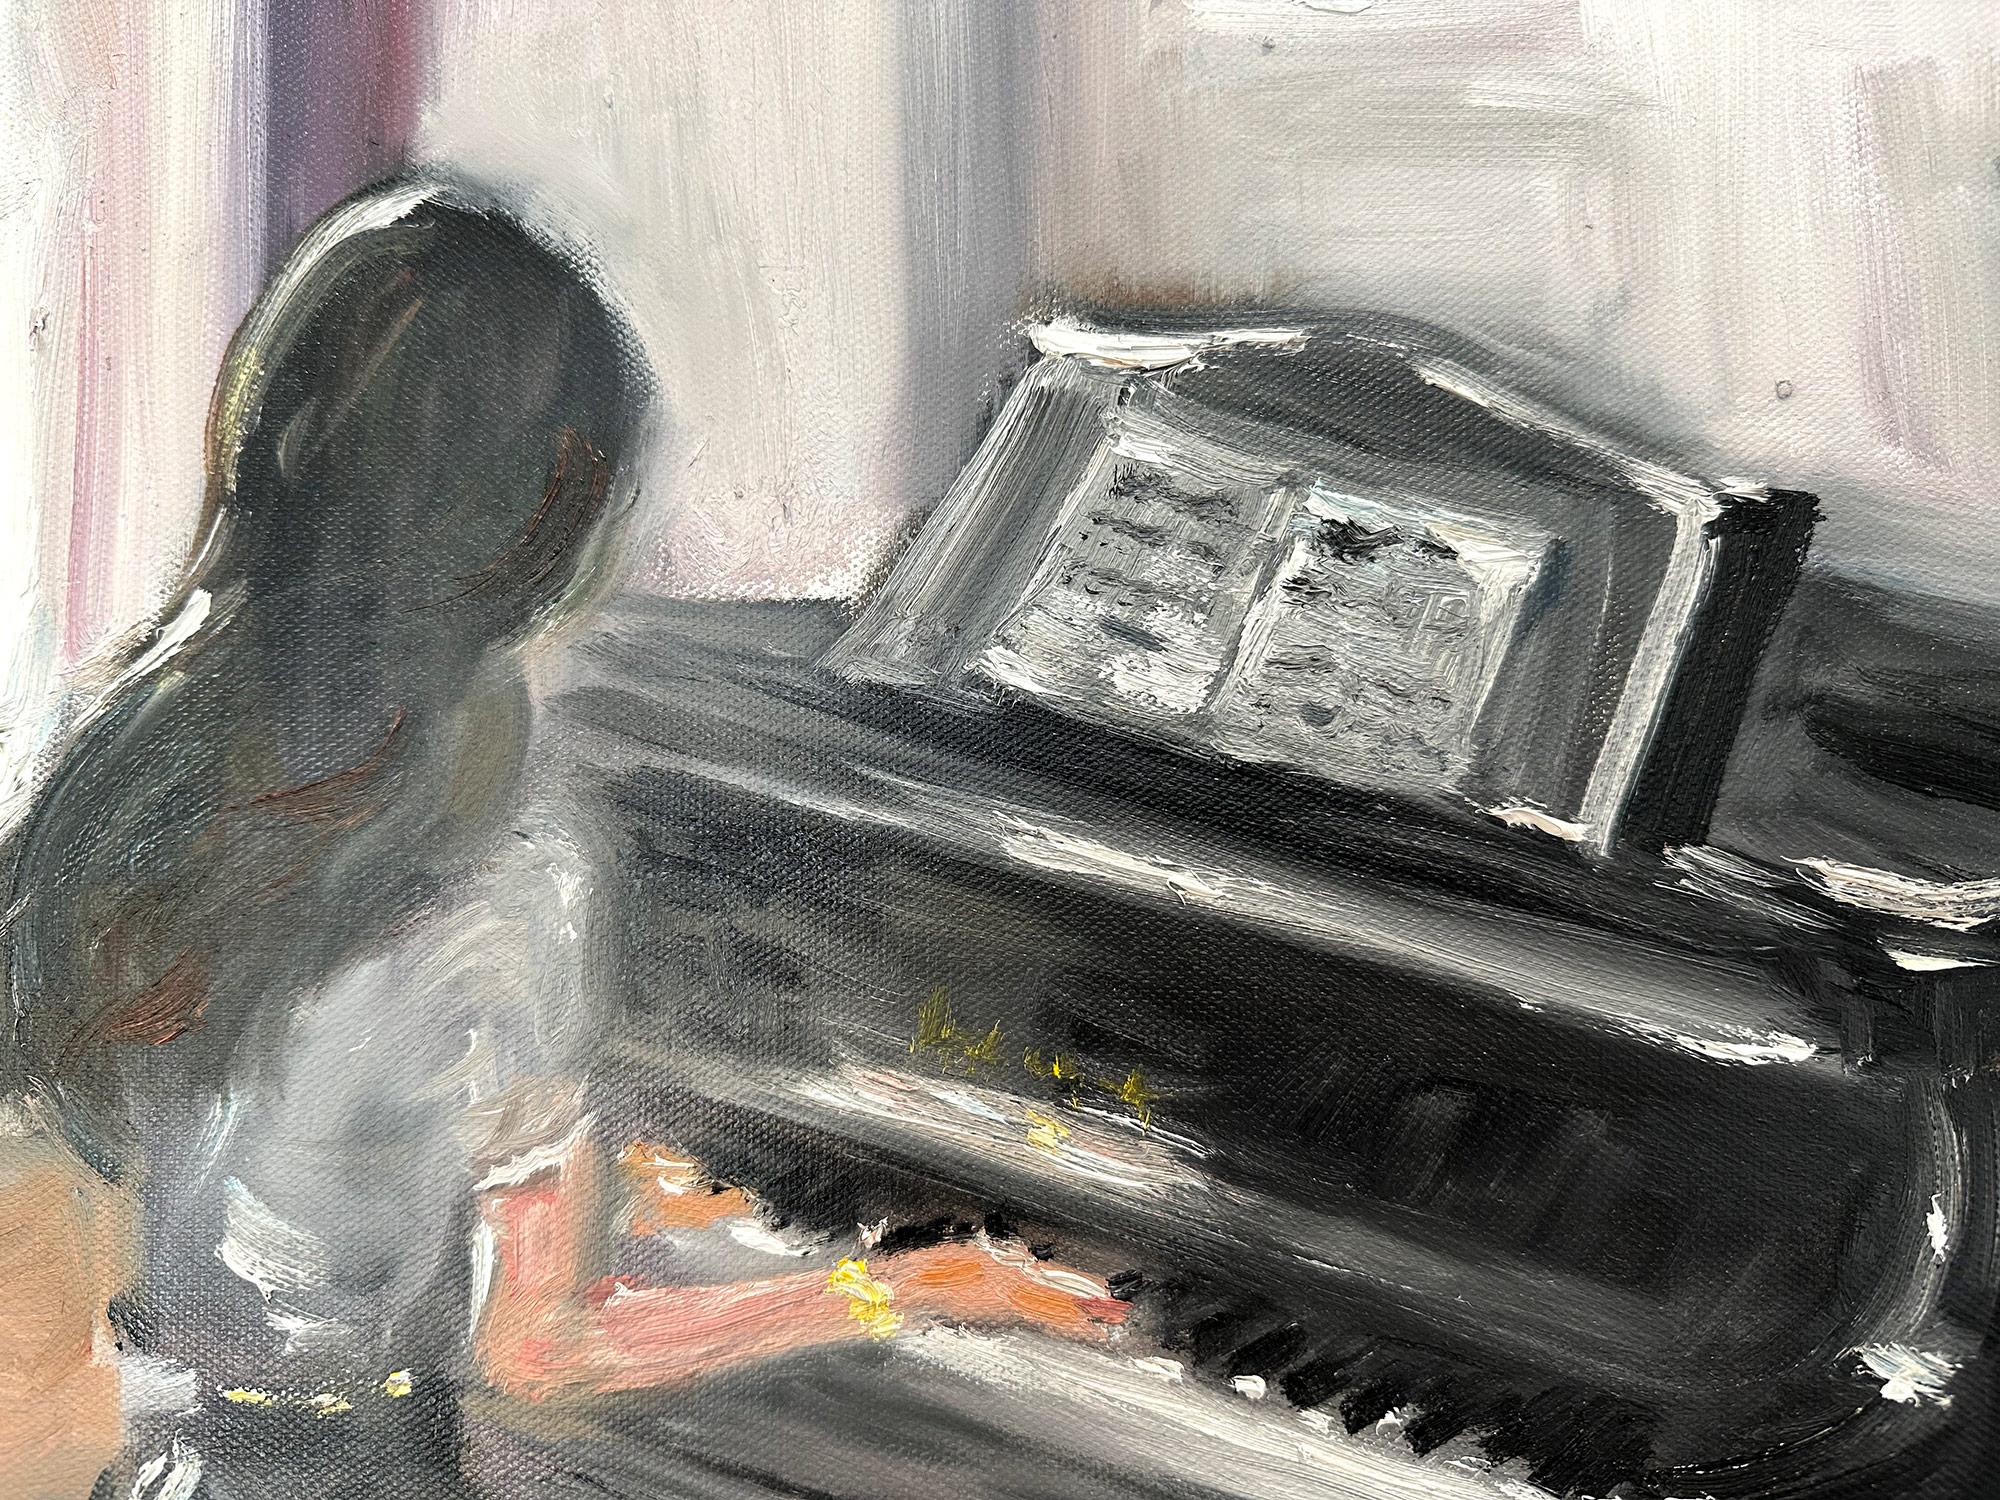 Eine charmante Darstellung einer Innenraumszene mit einer leidenschaftlich Klavier spielenden Frau. Eine gemütliche impressionistische Szene mit Wärme und Gefühl. Skurrile Details und schöne Pinselführung. Dieses Stück fängt die Essenz eines Pariser